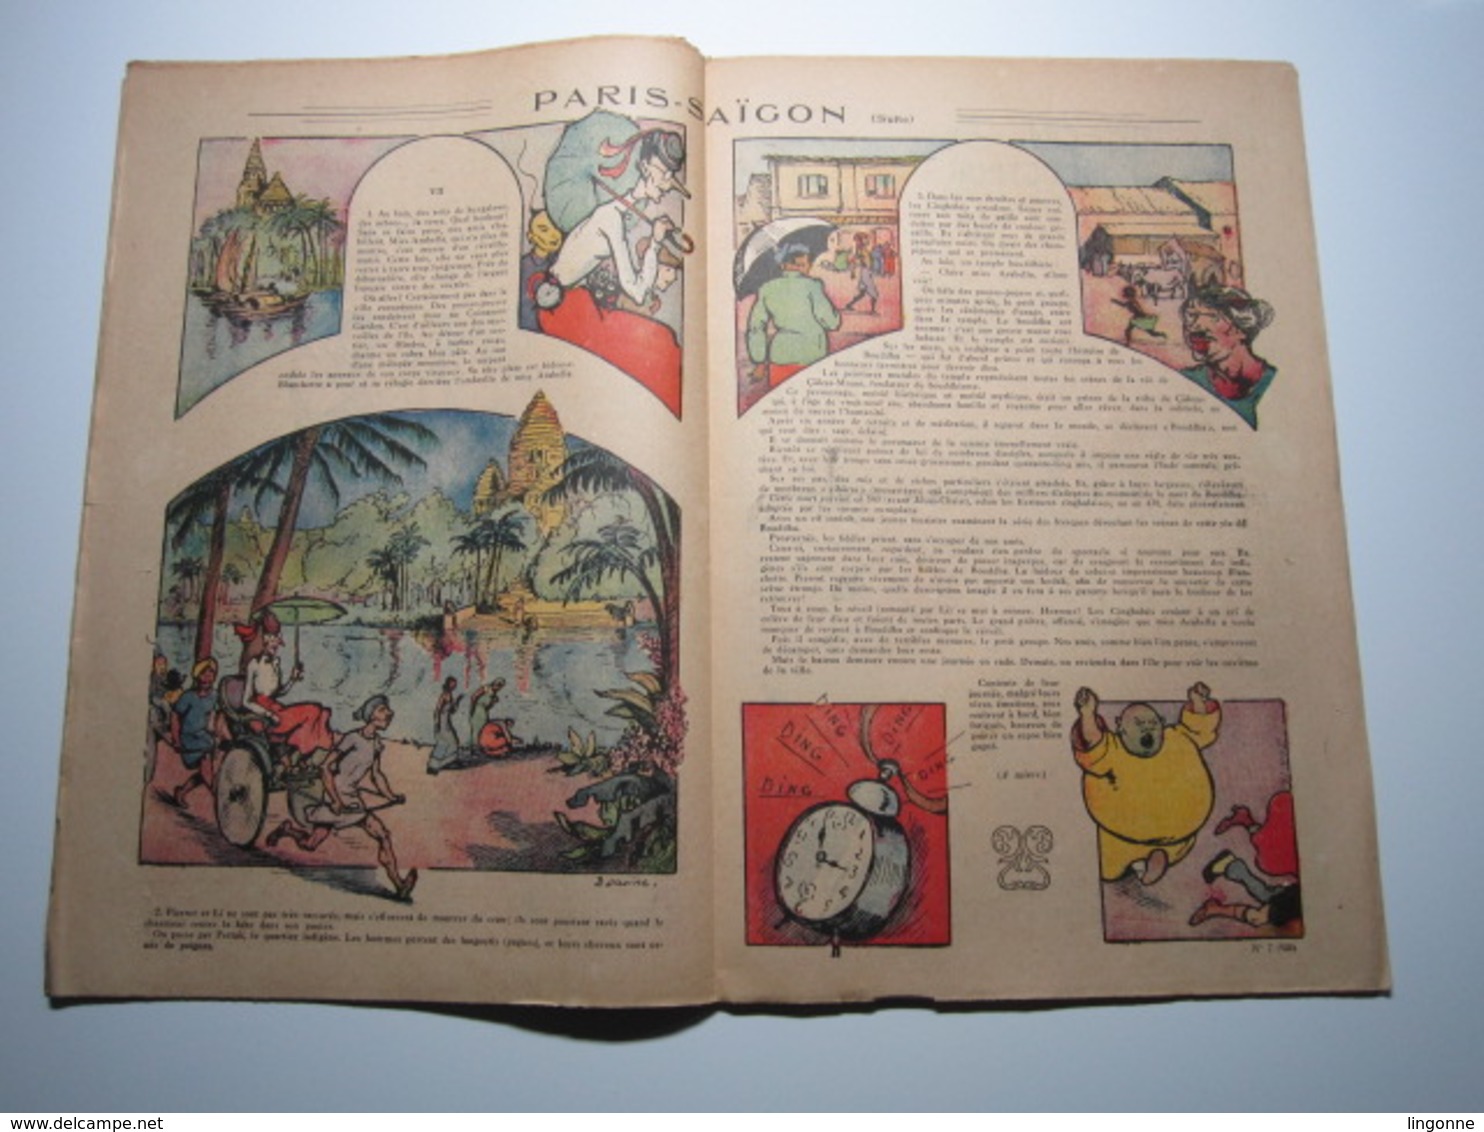 18 Février 1934 PIERROT JOURNAL DES GARÇONS 25Cts - Pierrot